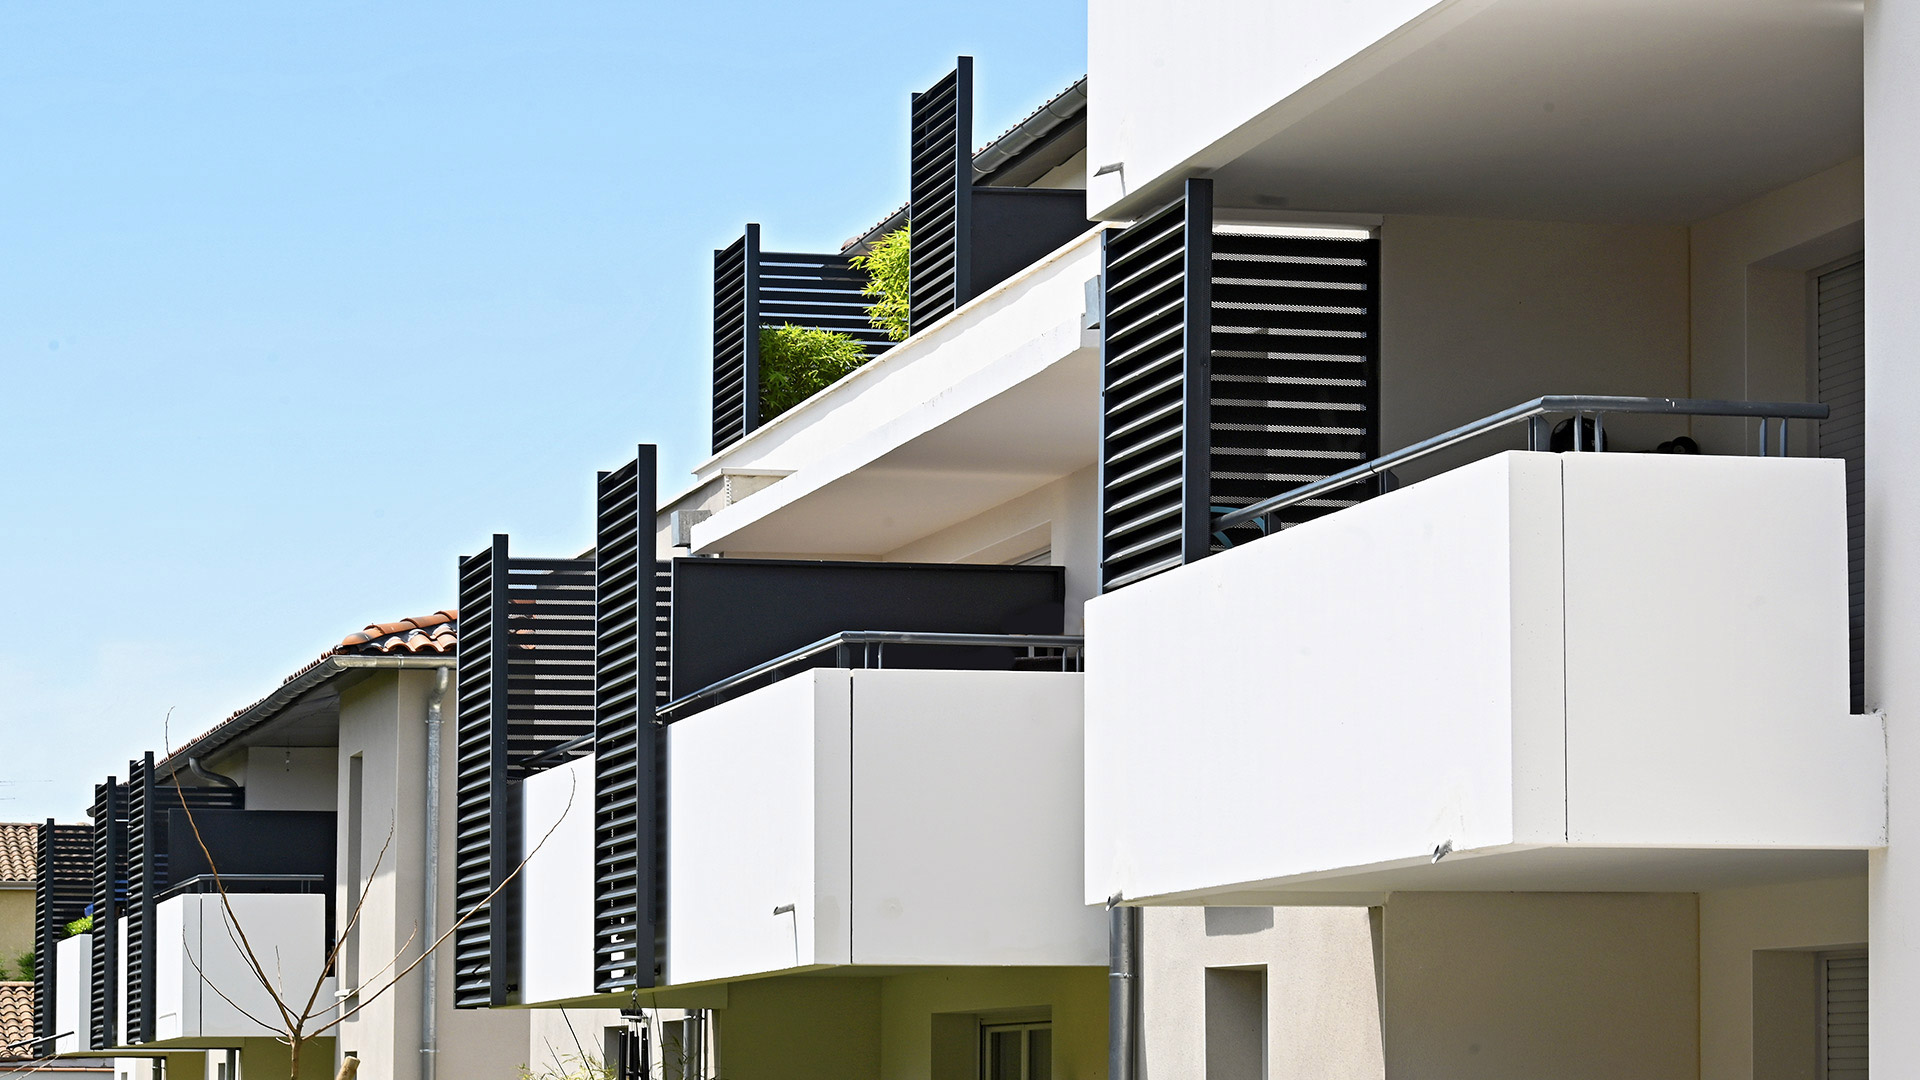 Résidence moderne au nord de Toulouse proposant des appartements avec balcons intimes.